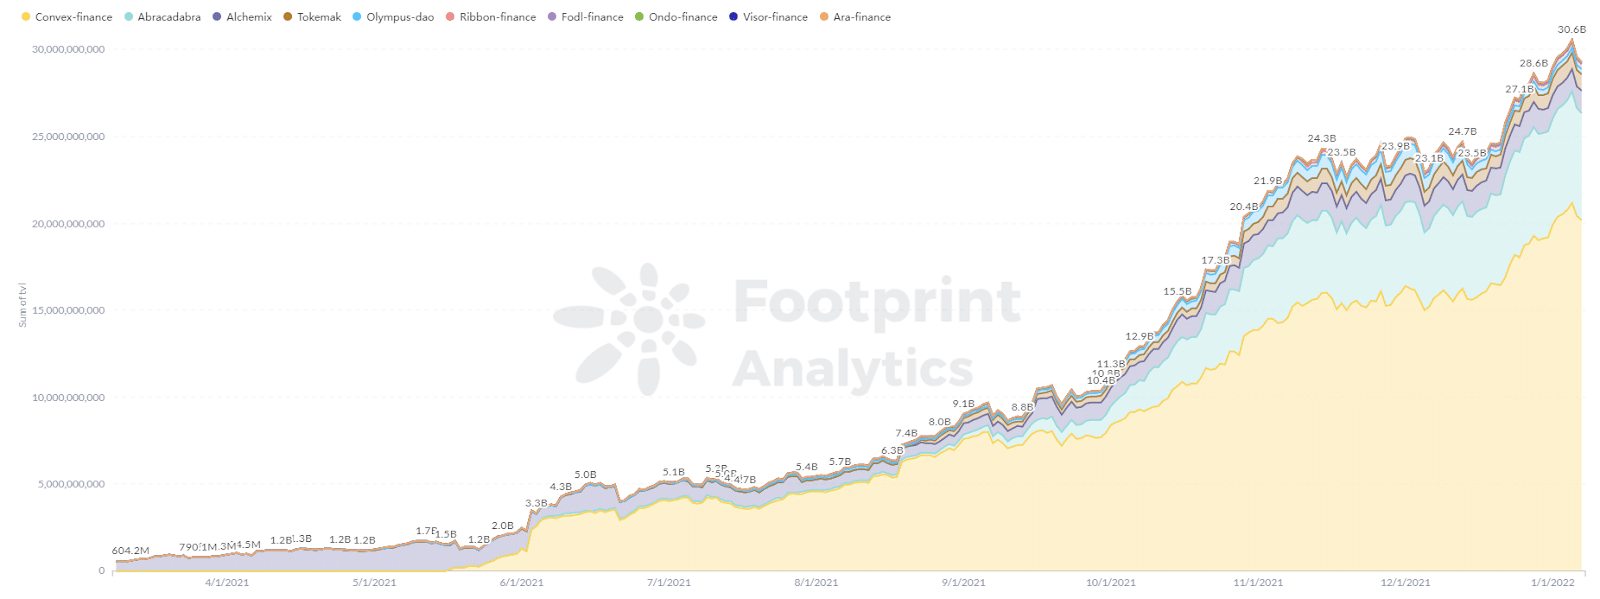 Footprint Analytics - TVL проектов DeFi 2.0 взлетел с 0 до 30 миллиардов в 2021 году